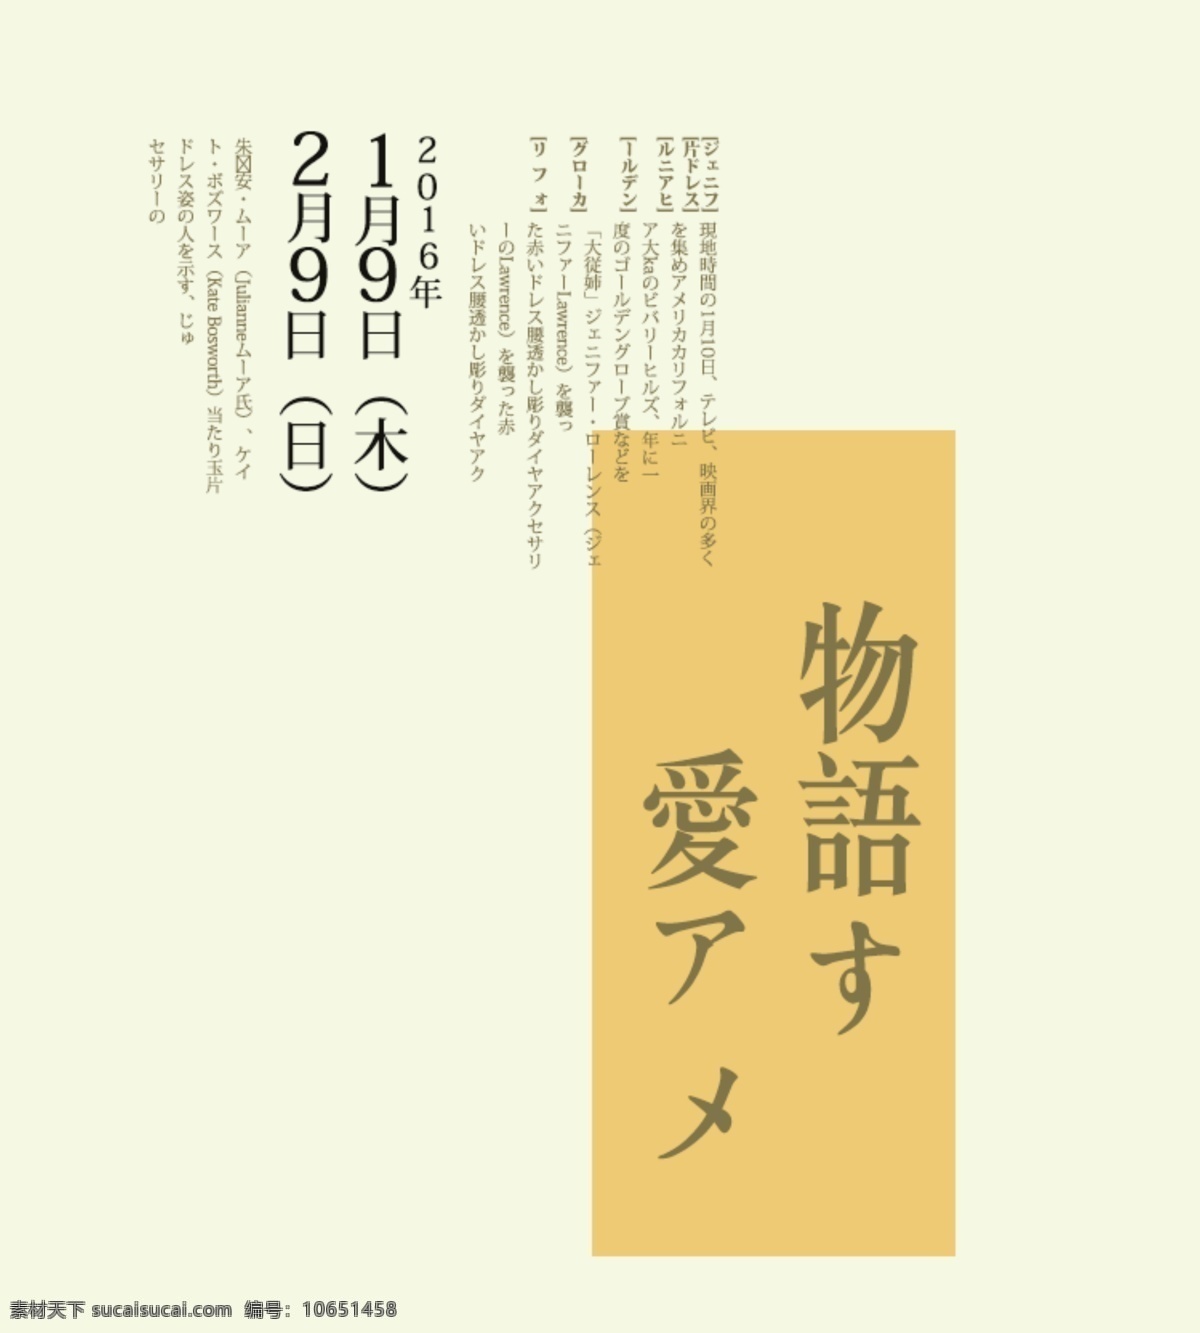 日系封面排版 日文排版 排版样式 日文 psd素材 排版设计 日本文字 创意排版 字体设计 杂志排版 封面排版 日系字体排版 日系排版 白色